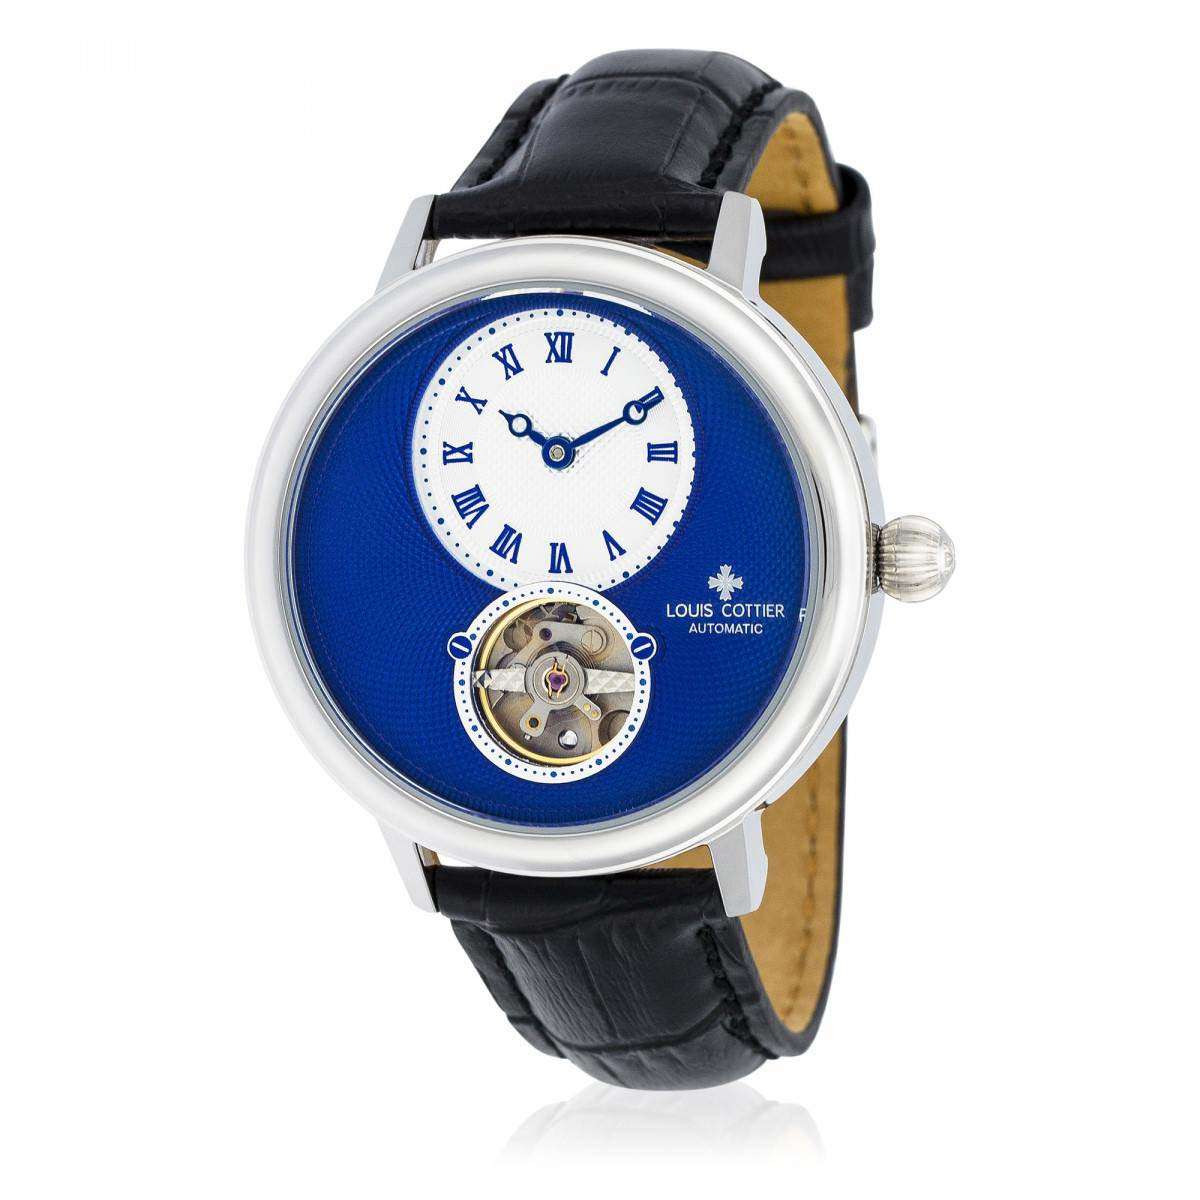 Montre Louis Cottier STORYMATIC Automatique 43 mm Bleu boitier argenté - bracelet noir - HB34330C4BC1